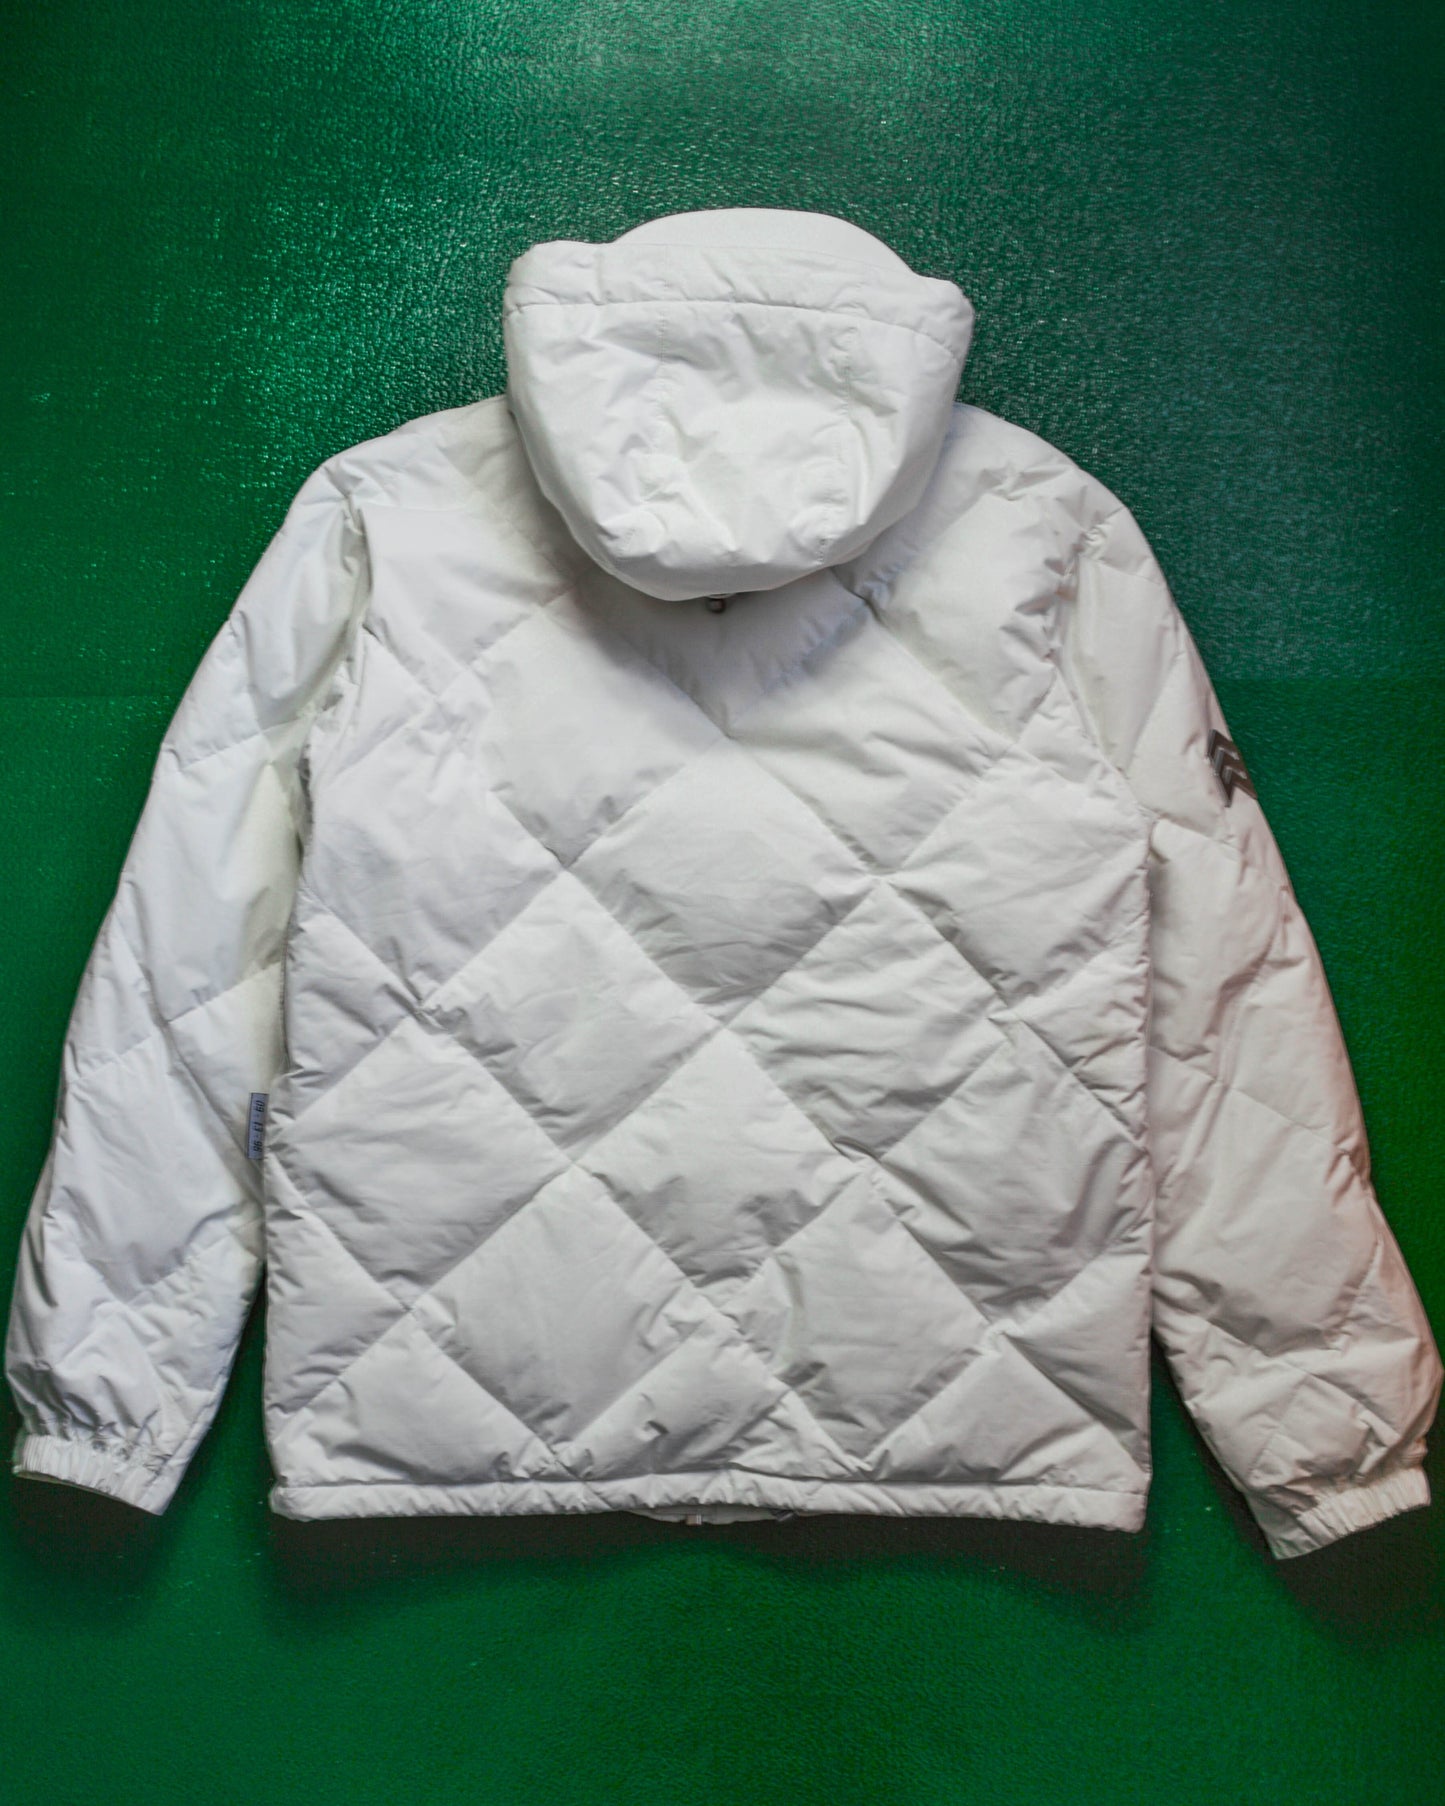 ANALOG Diamond Stitch White Multi Pocket Puffer Jacket (~M~)